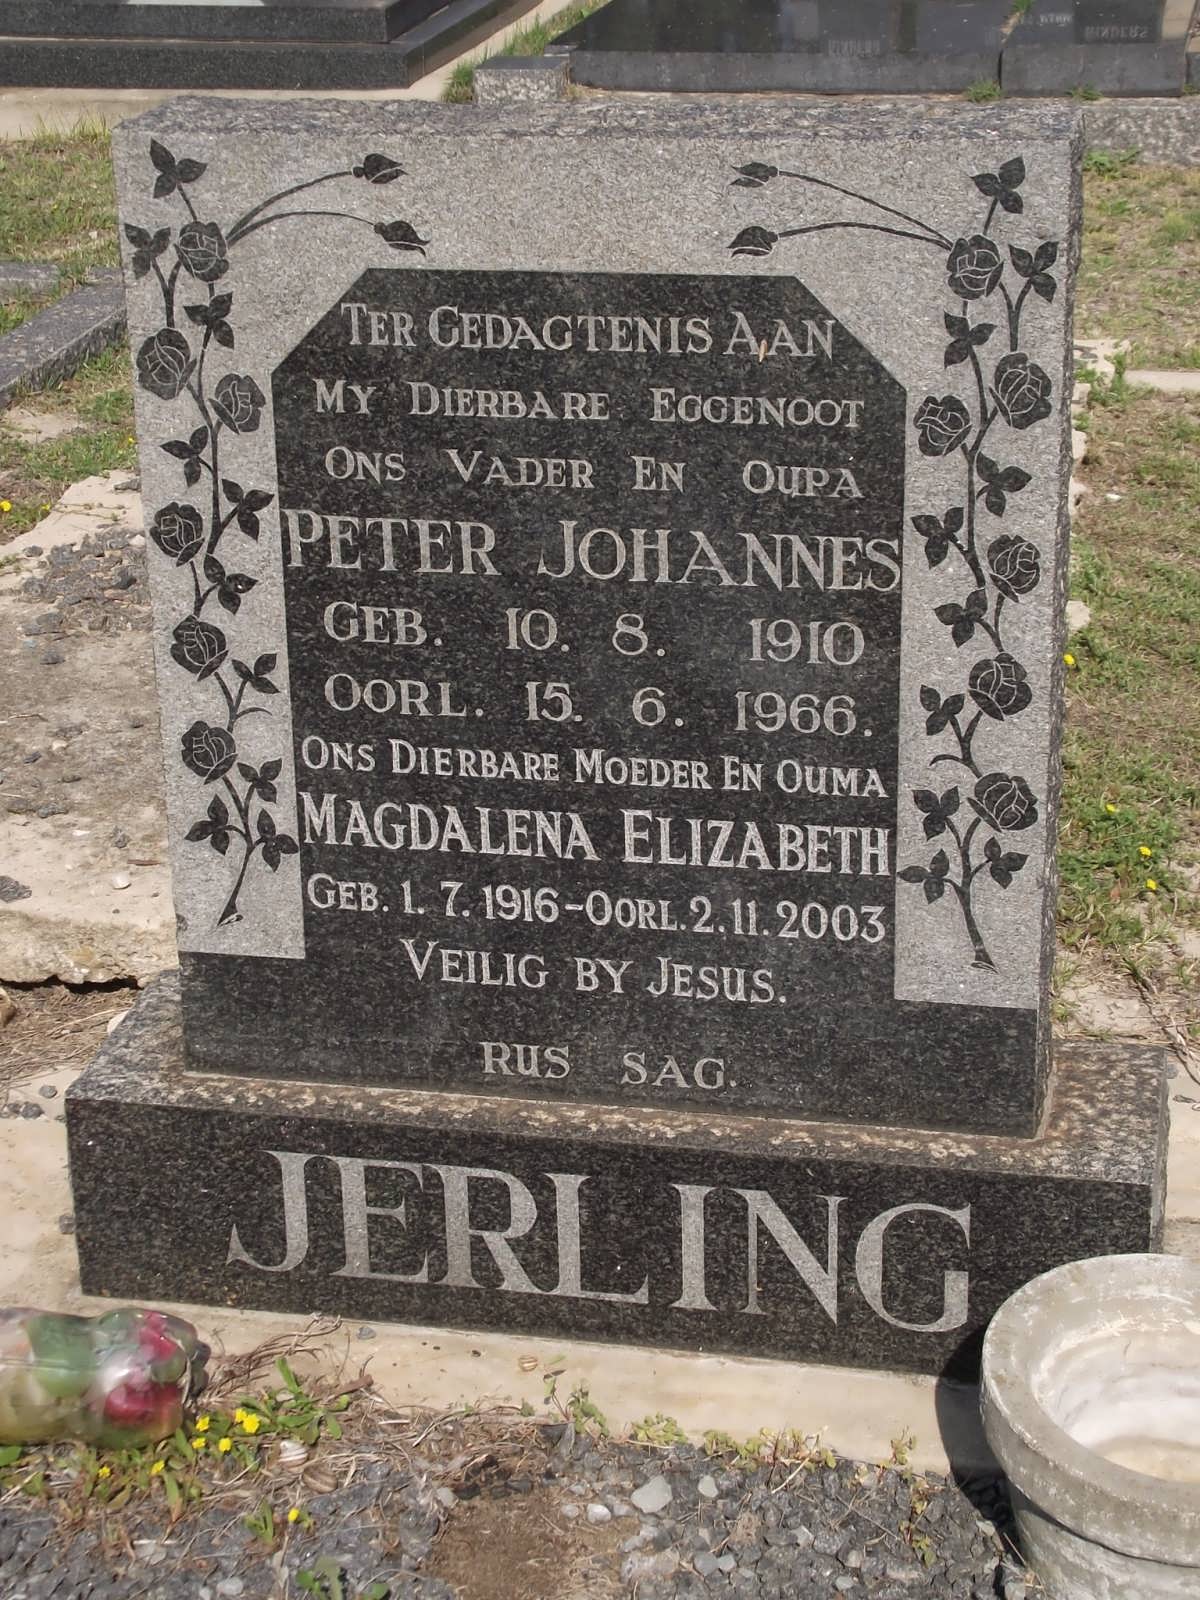 JERLING Pieter Johannes 1910-1966 & Magdalena Elizabeth 1916-2003